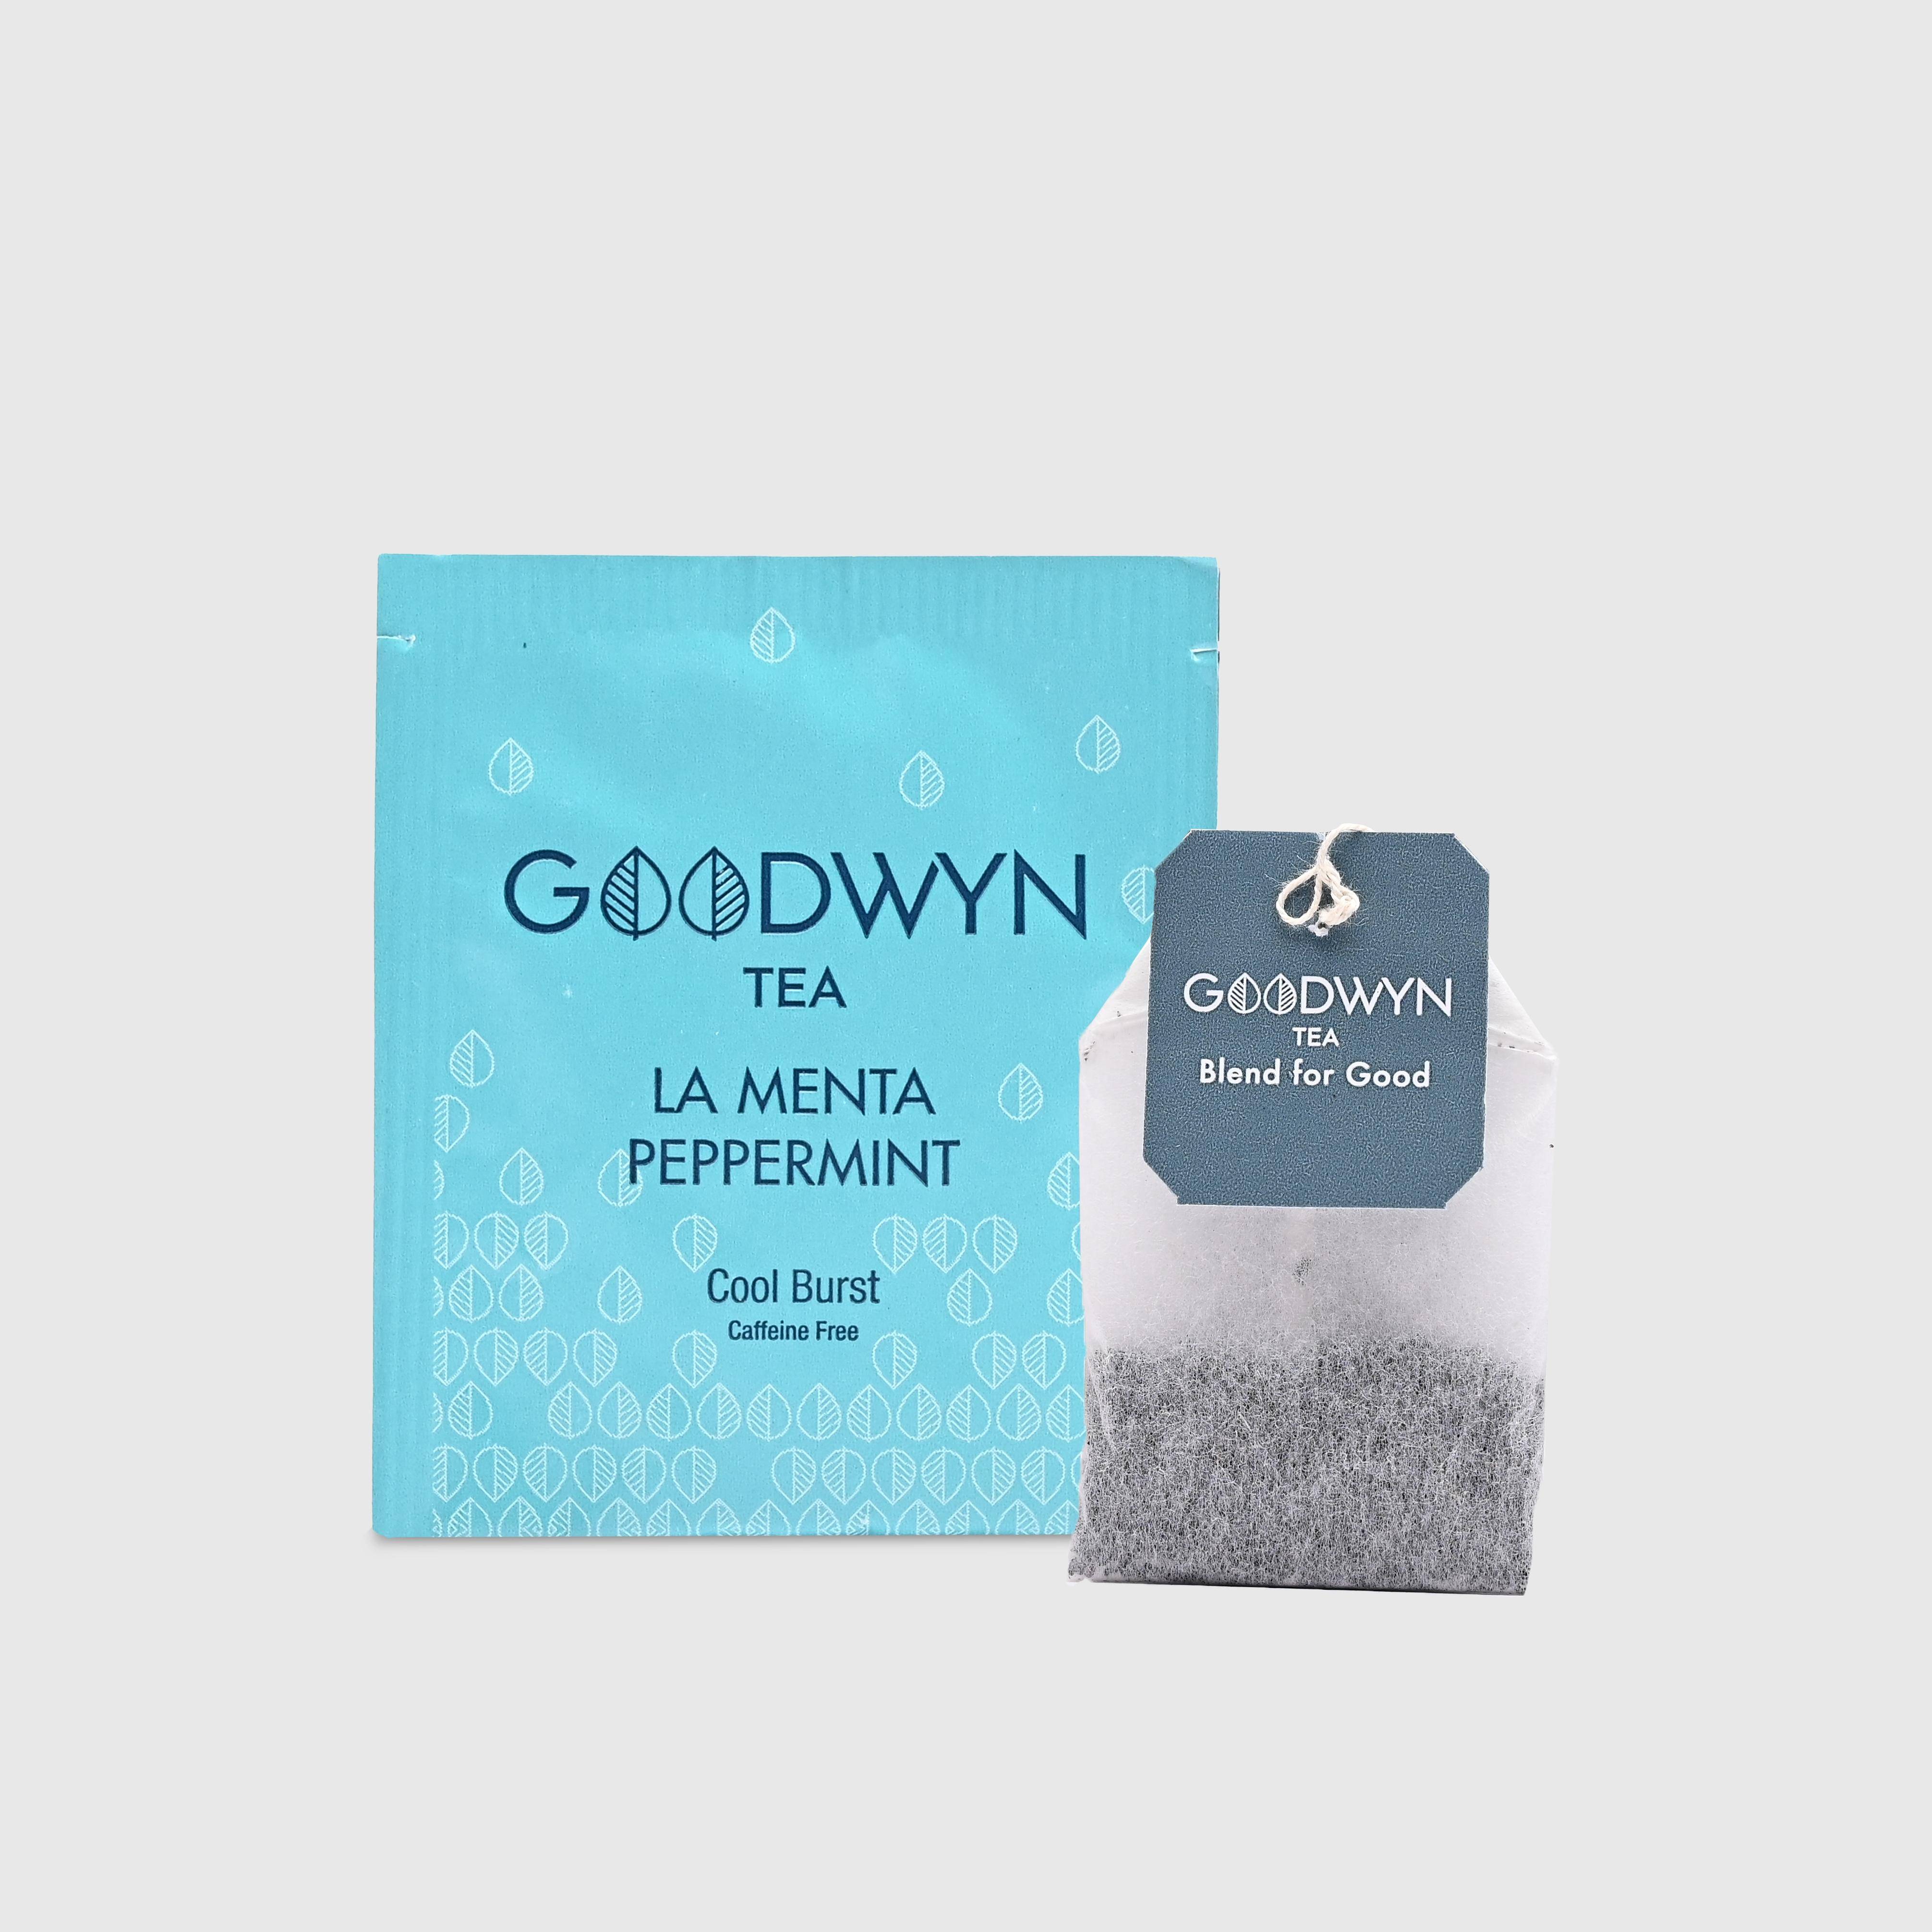 Goodwyn Peppermint Enveloped Tea Bags 100s